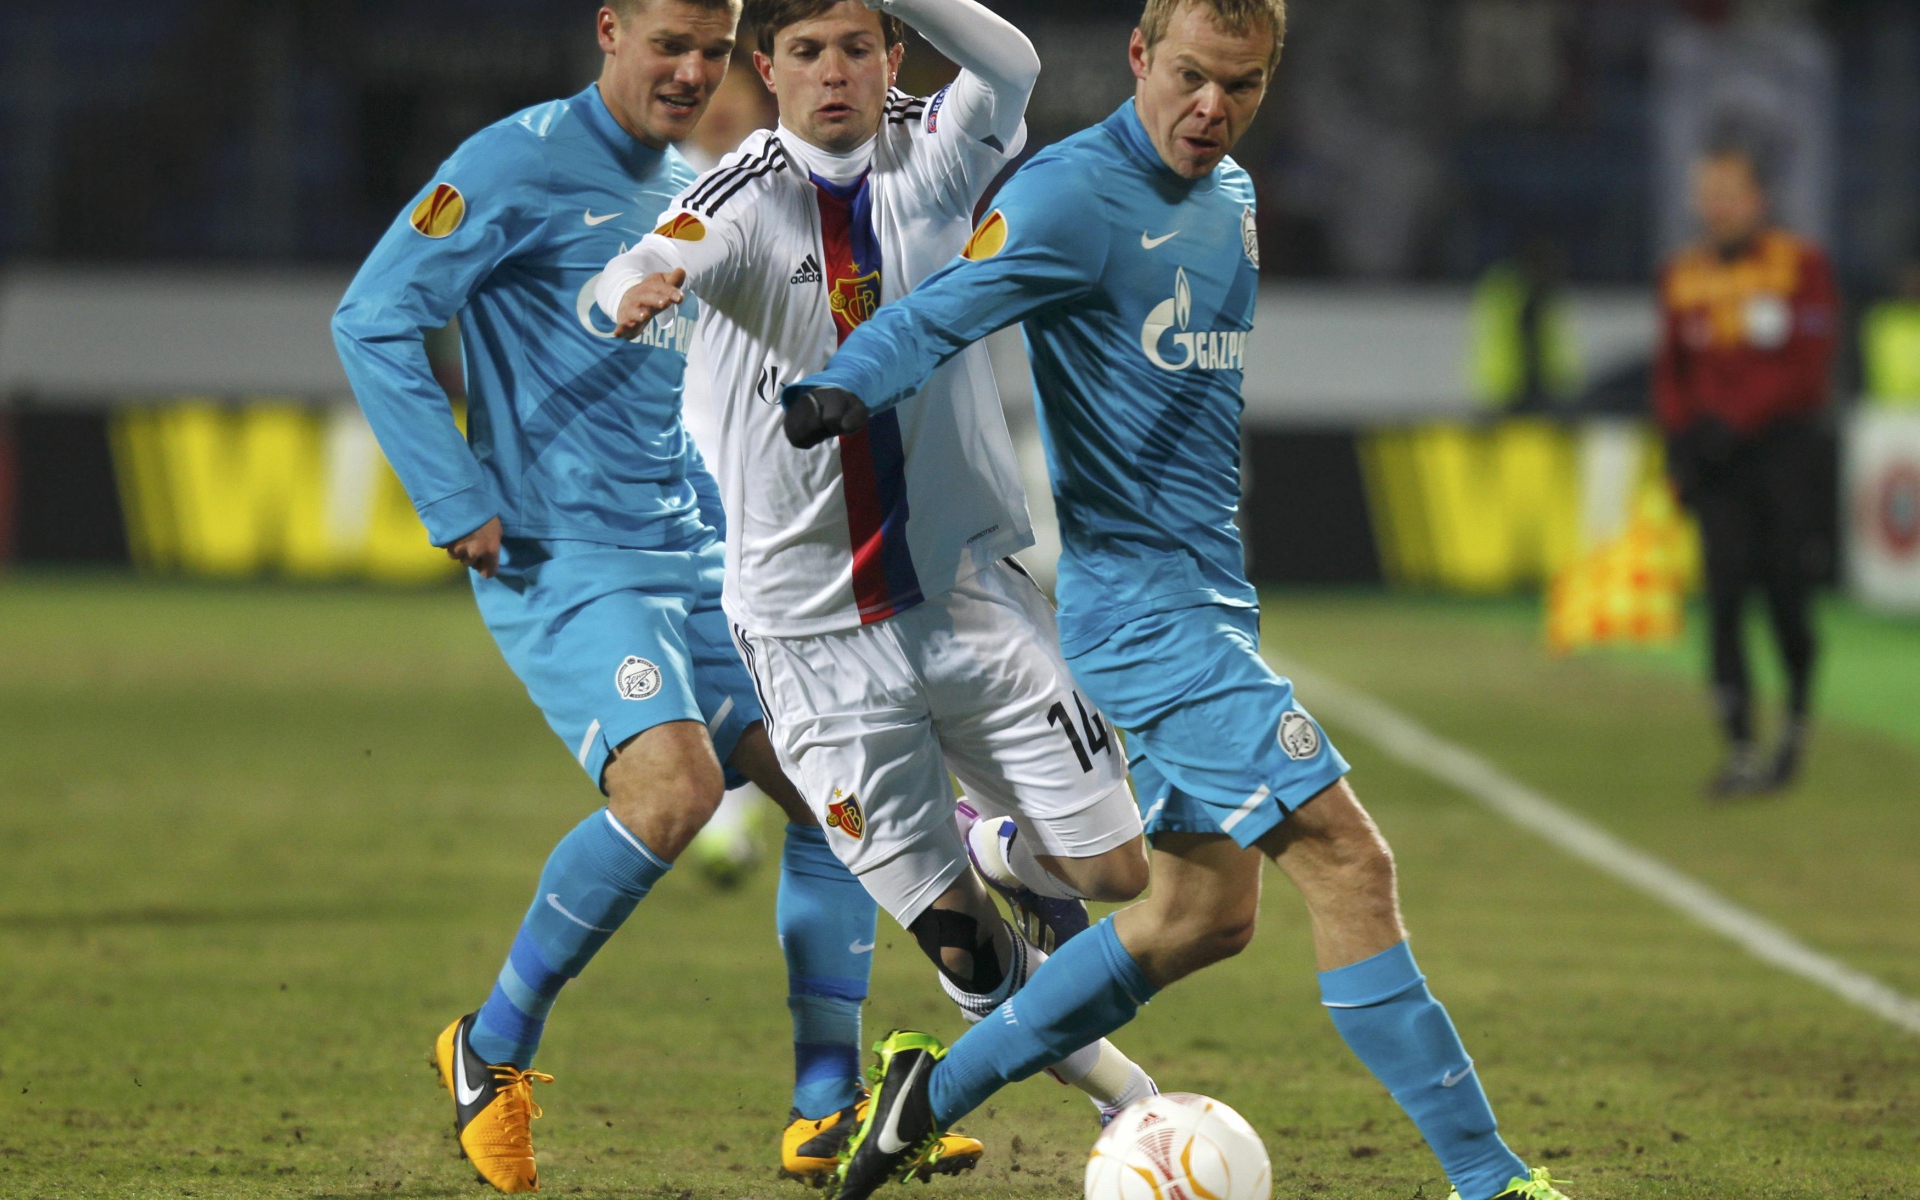 Zenit defender Alexander Anyukov at work